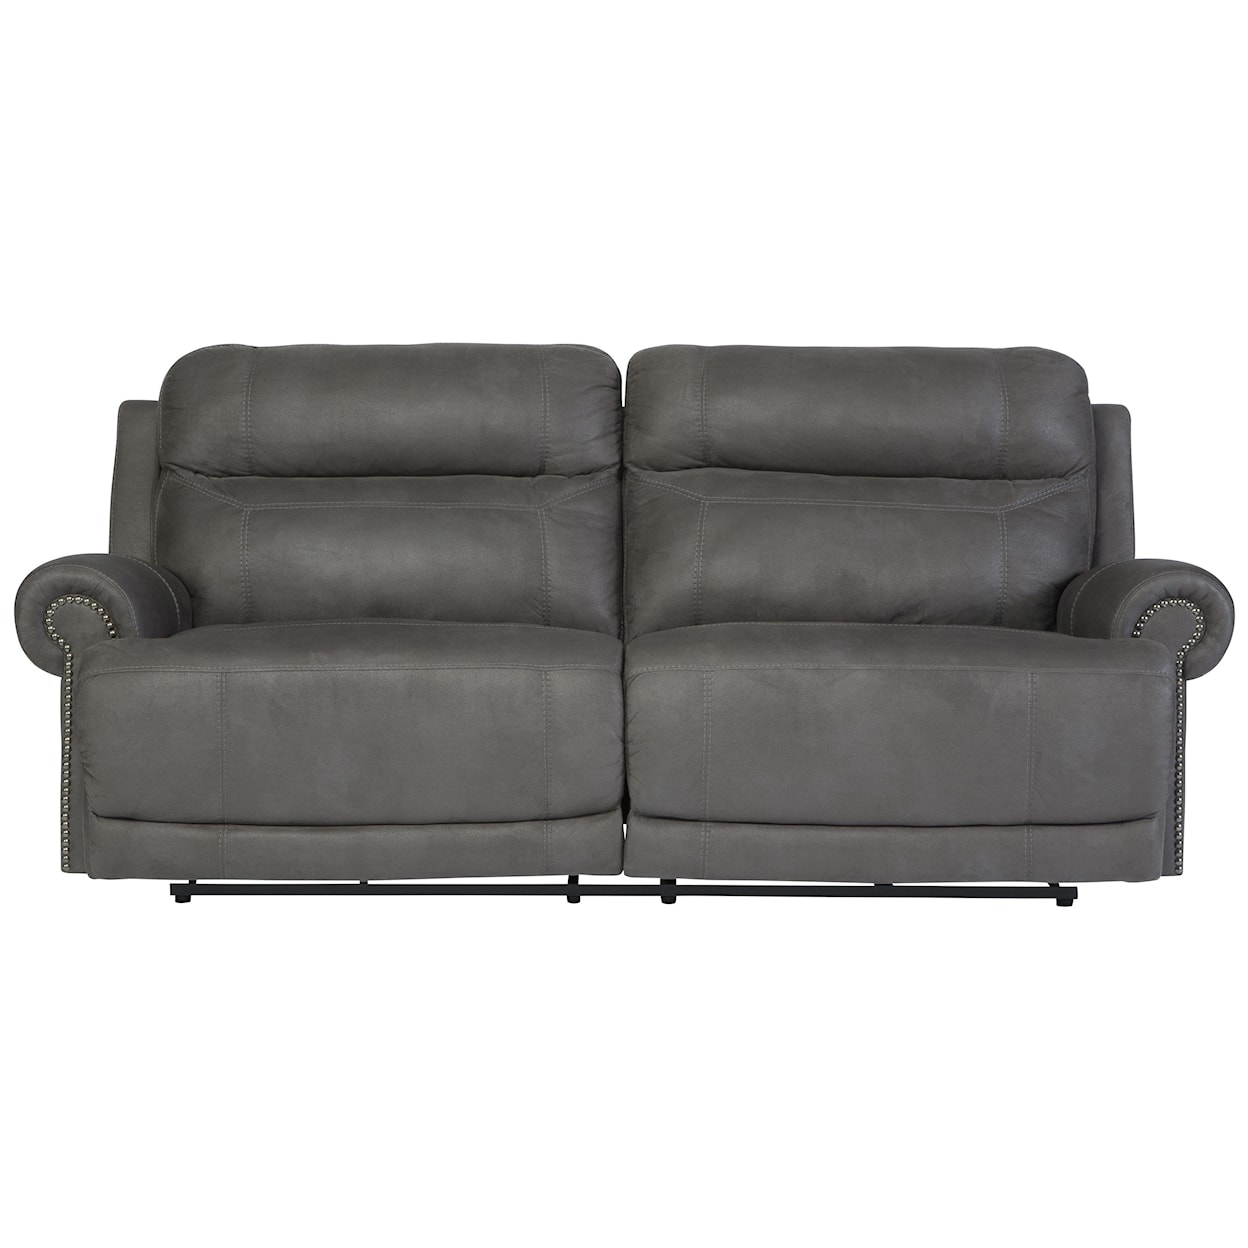 Signature Design Austere 2 Seat Reclining Sofa